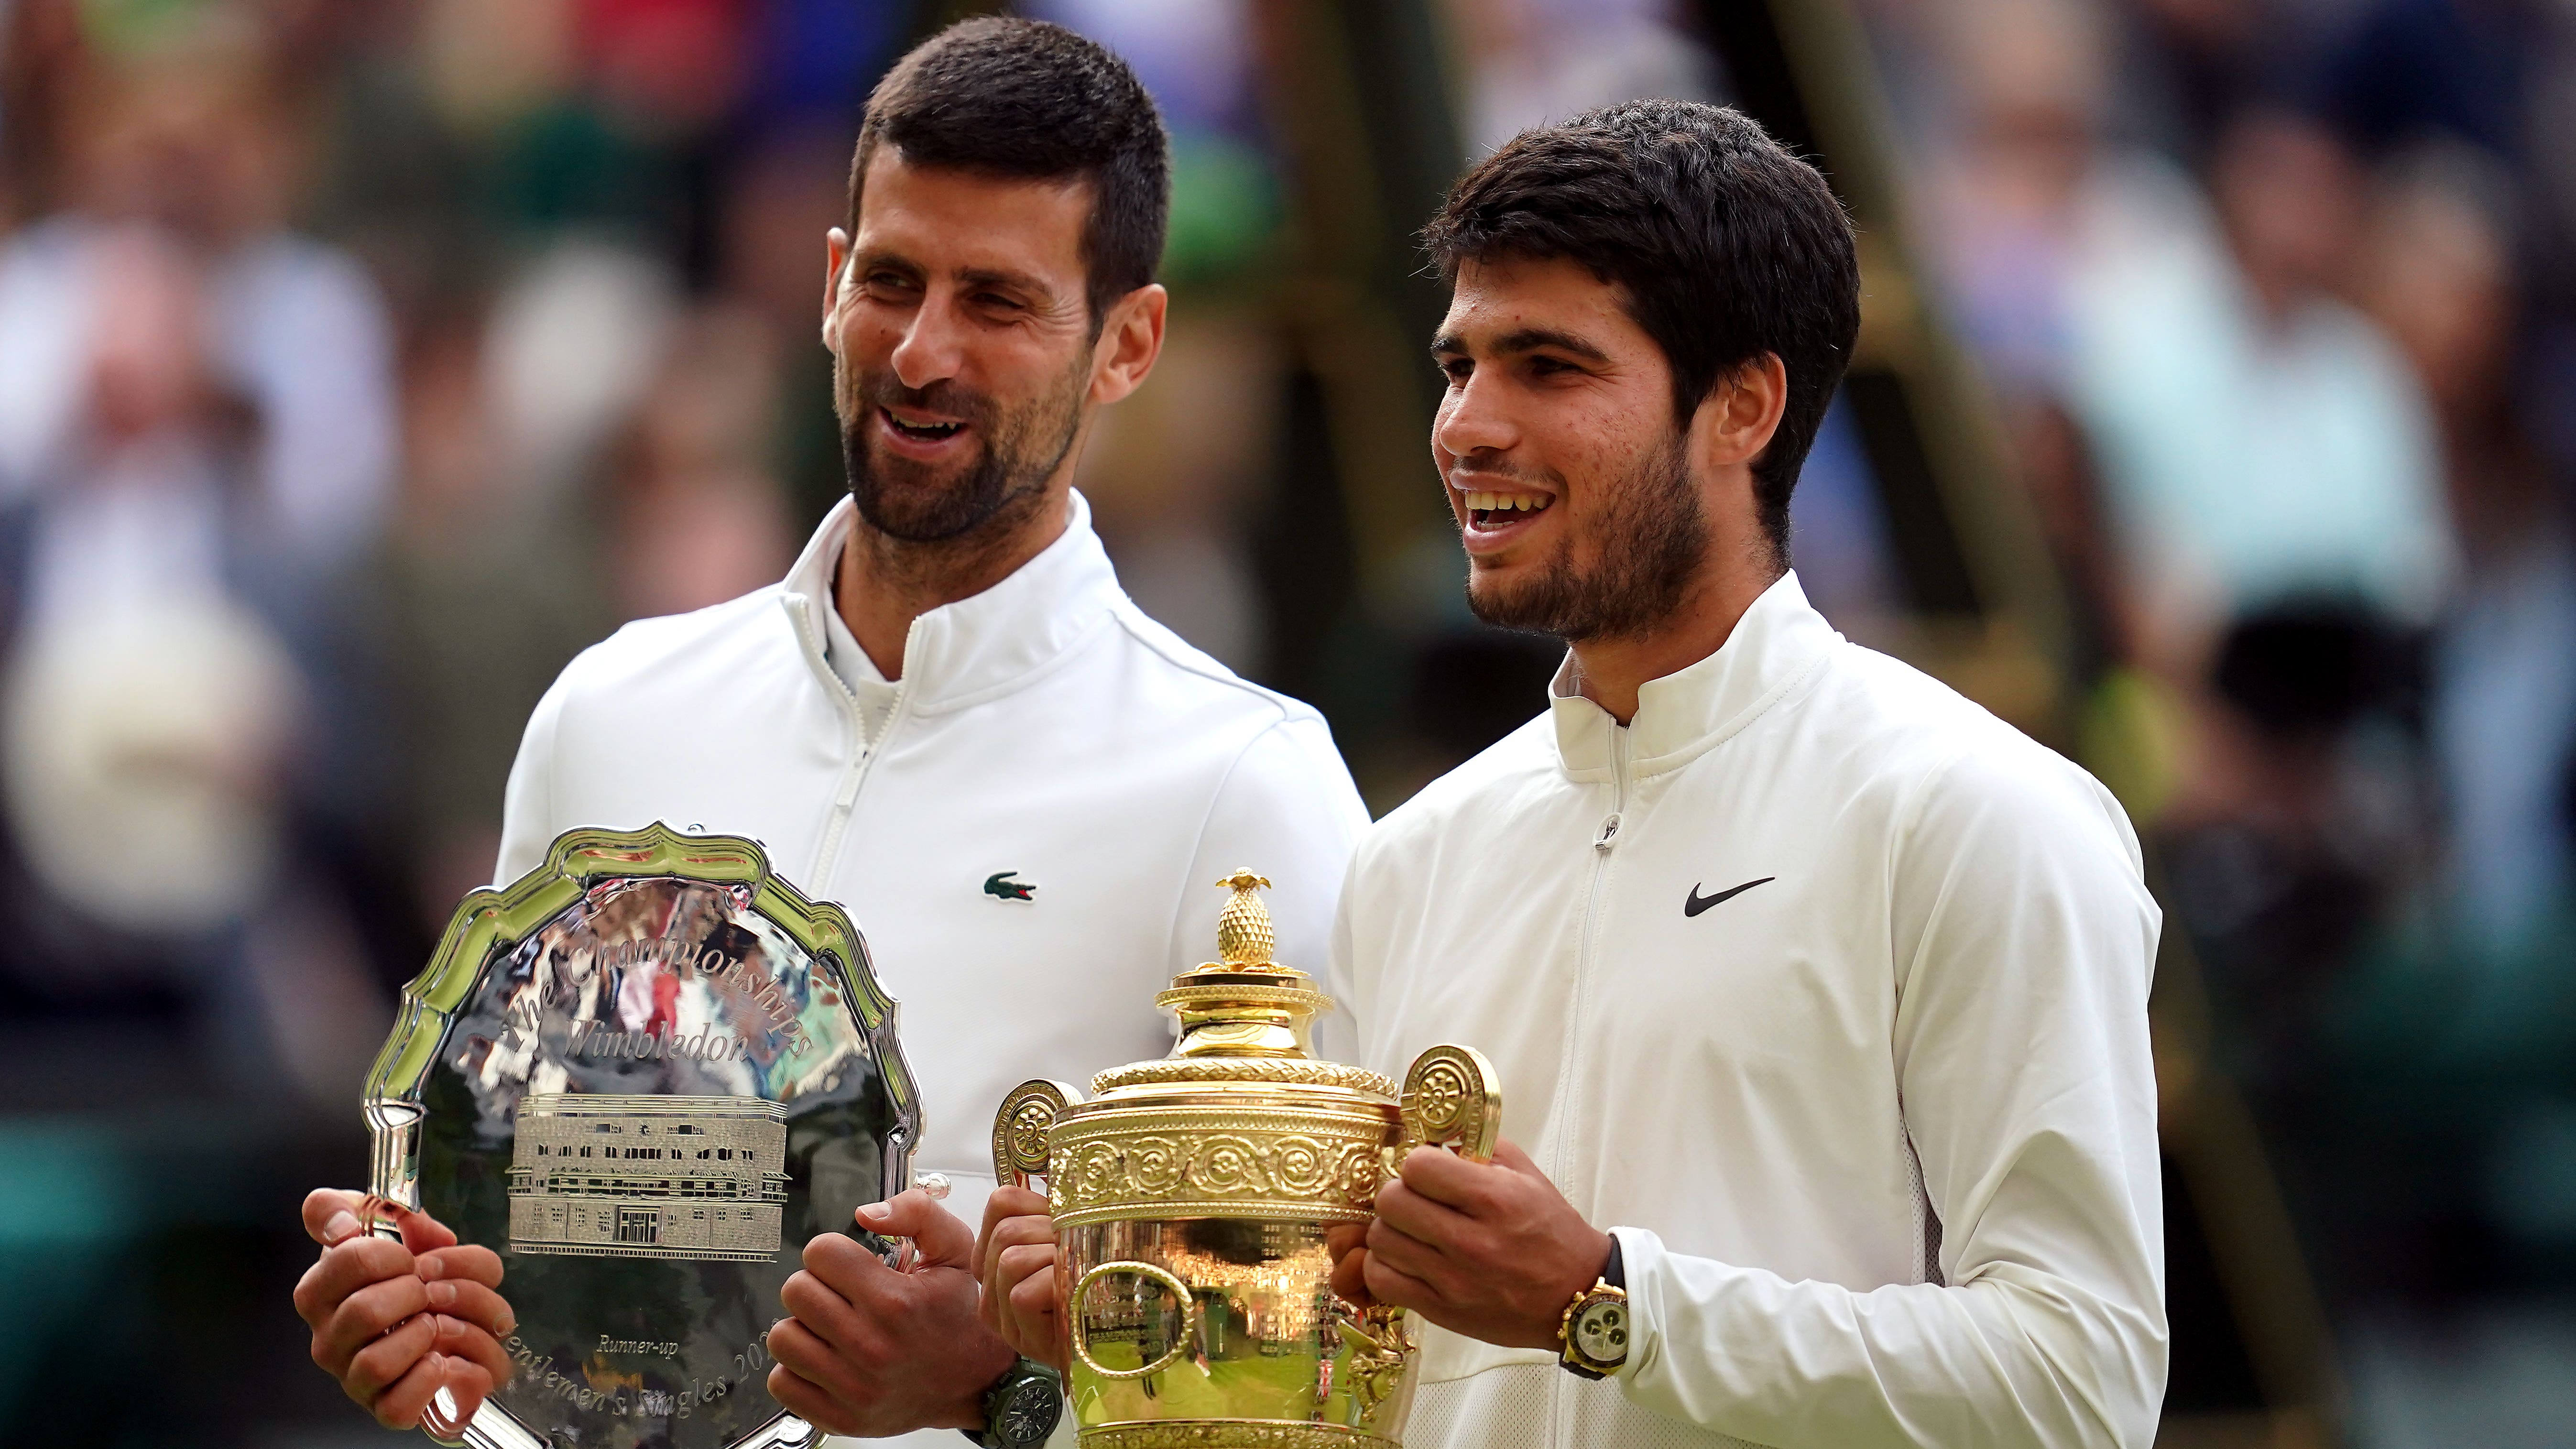 Wimbledon day 12: Carlos Alcaraz and Novak Djokovic bid to set up final repeat